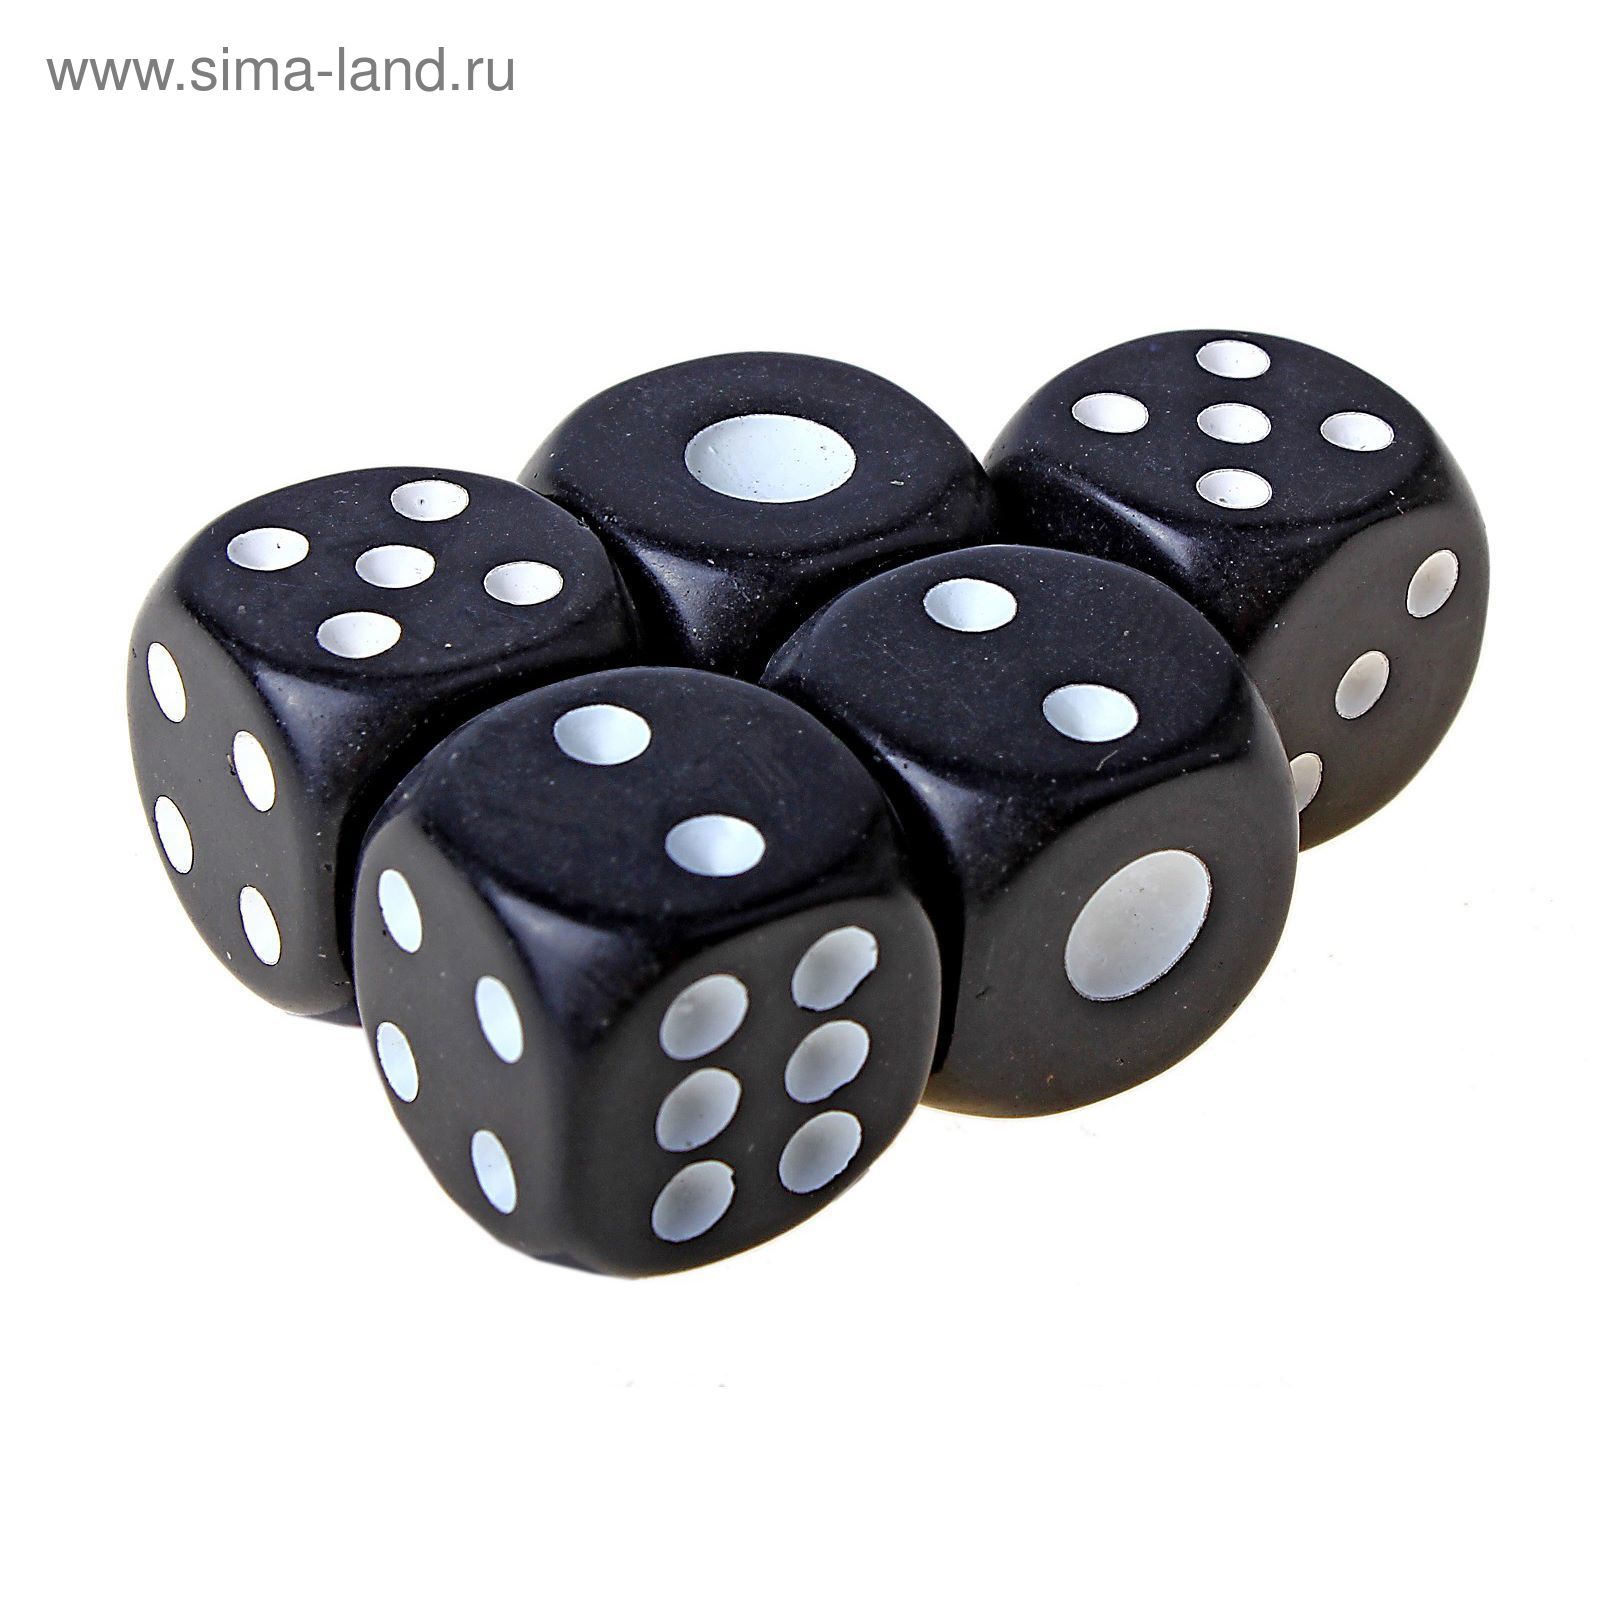 Кости игральные 1,6 × 1,6 см, чёрные с белыми точками, фасовка 100 шт.